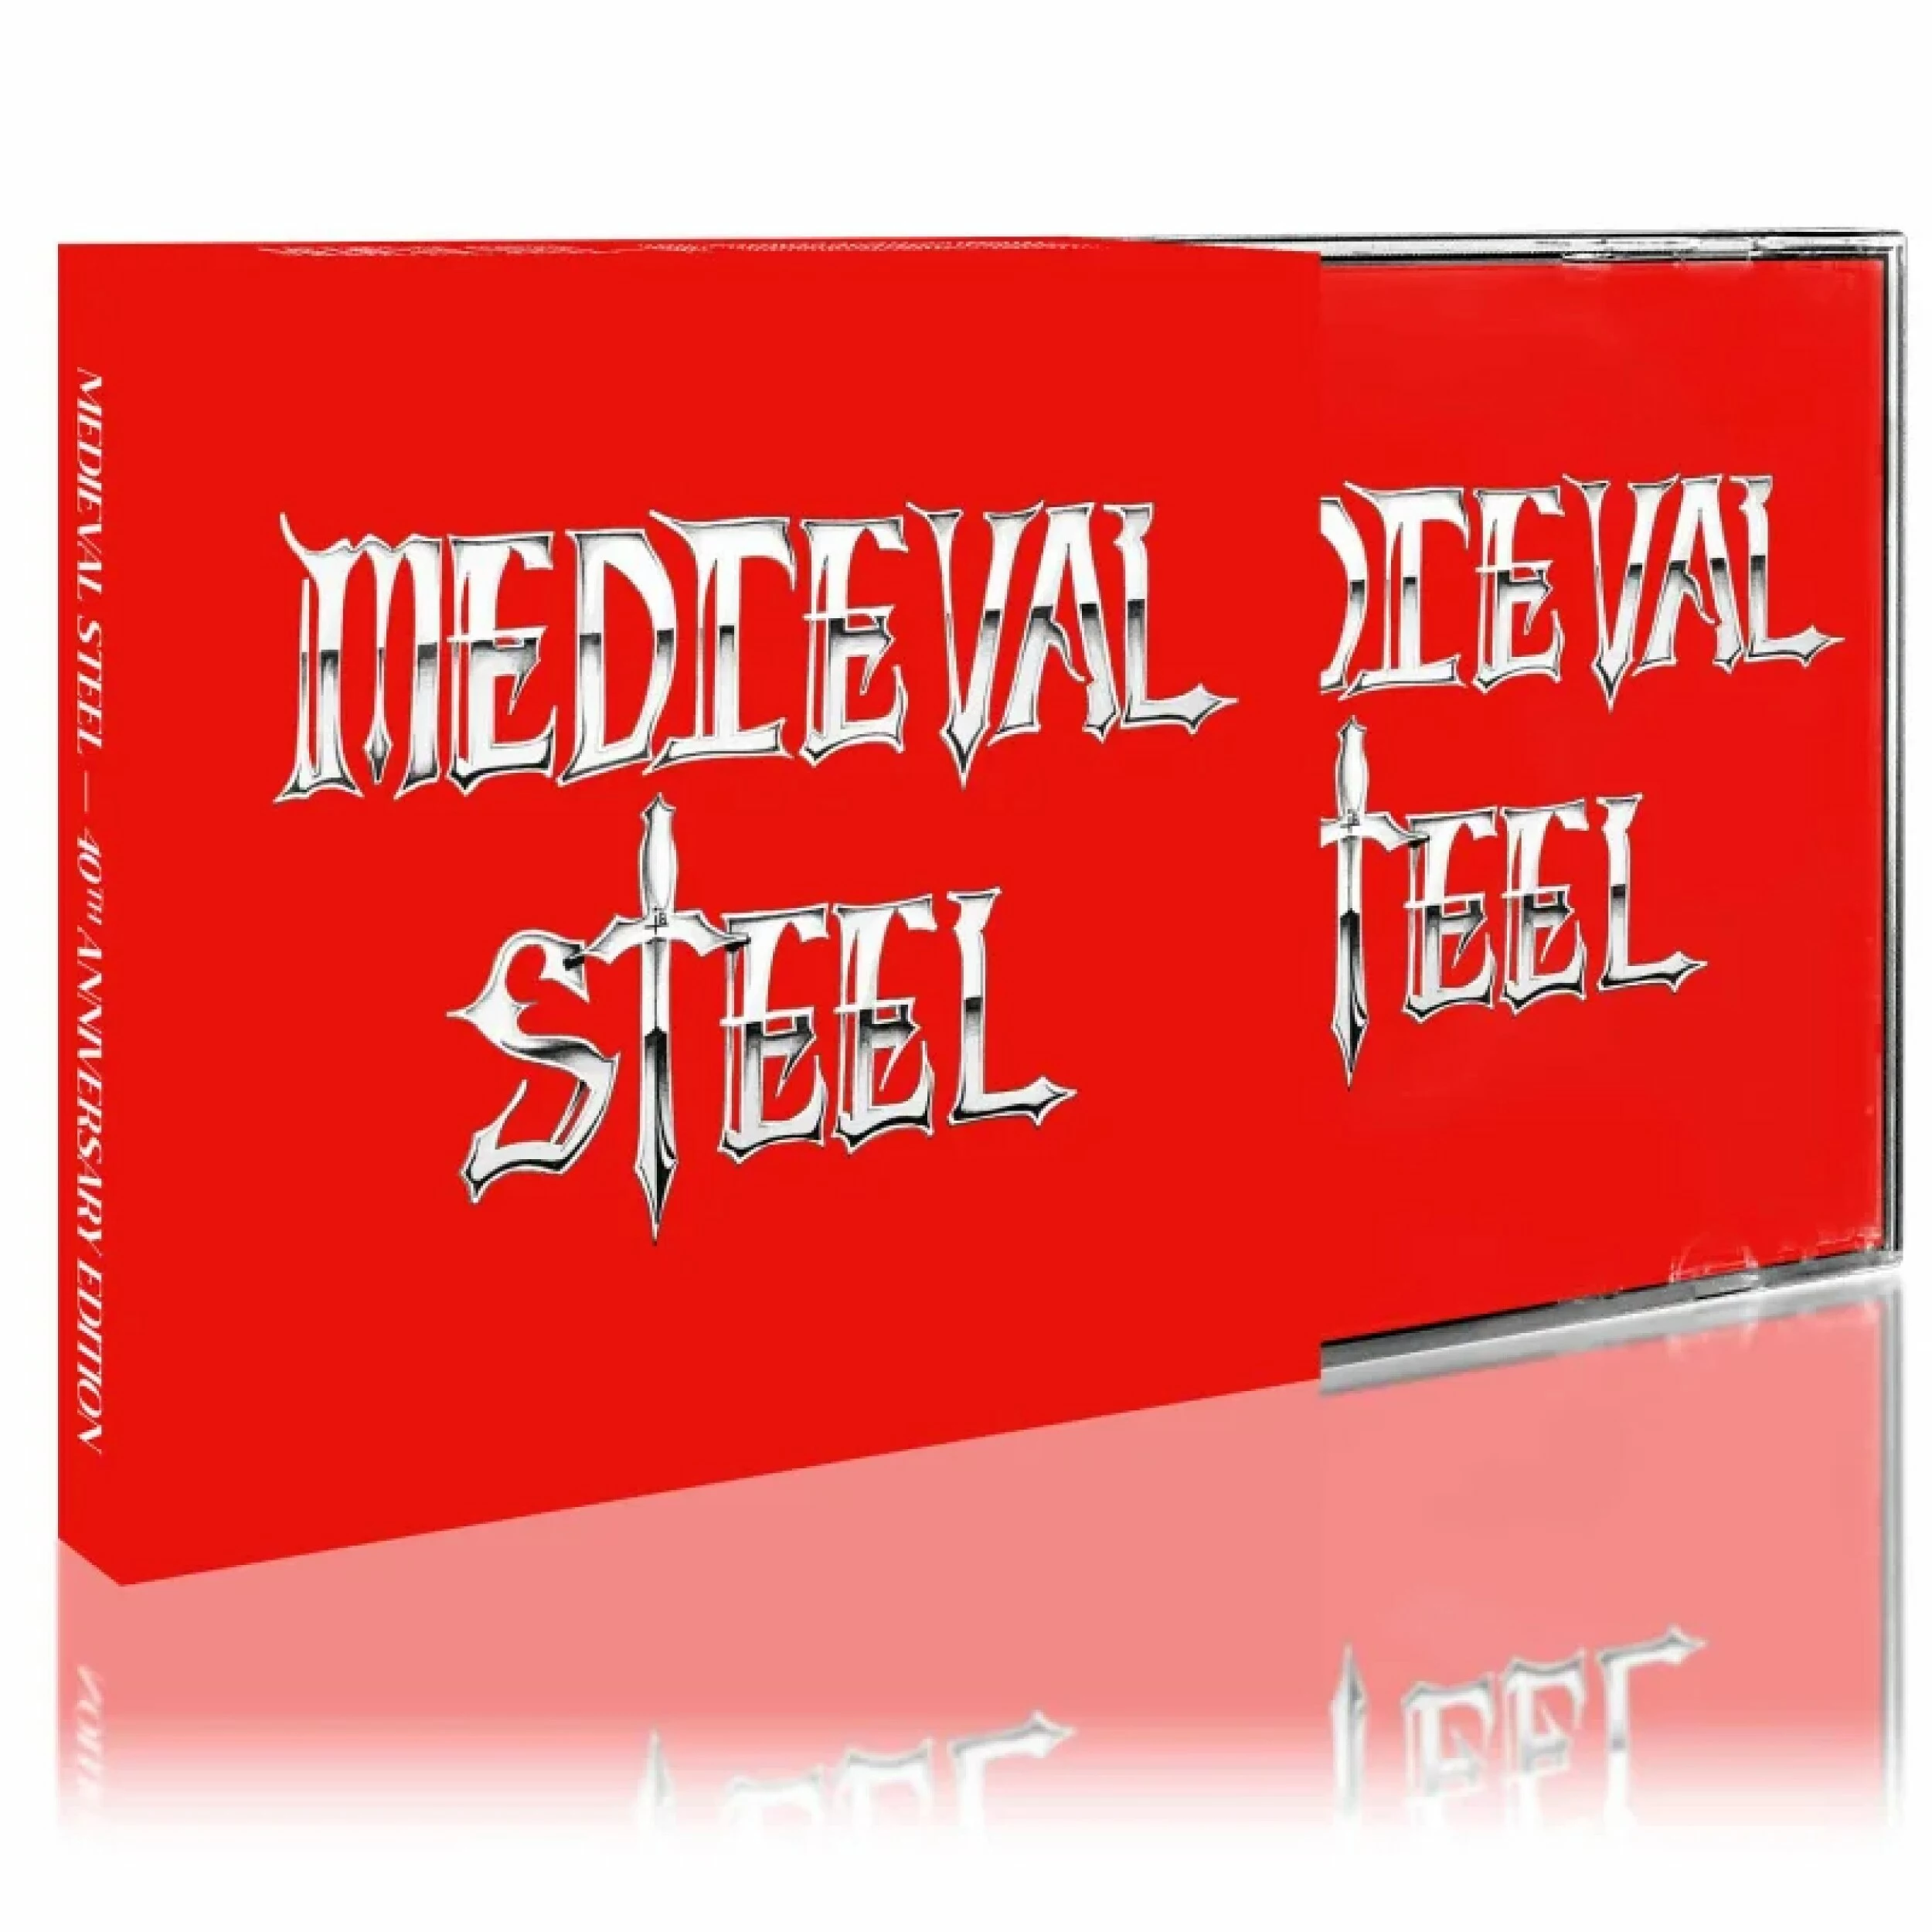 MEDIEVAL STEEL - Medieval Steel [CD]